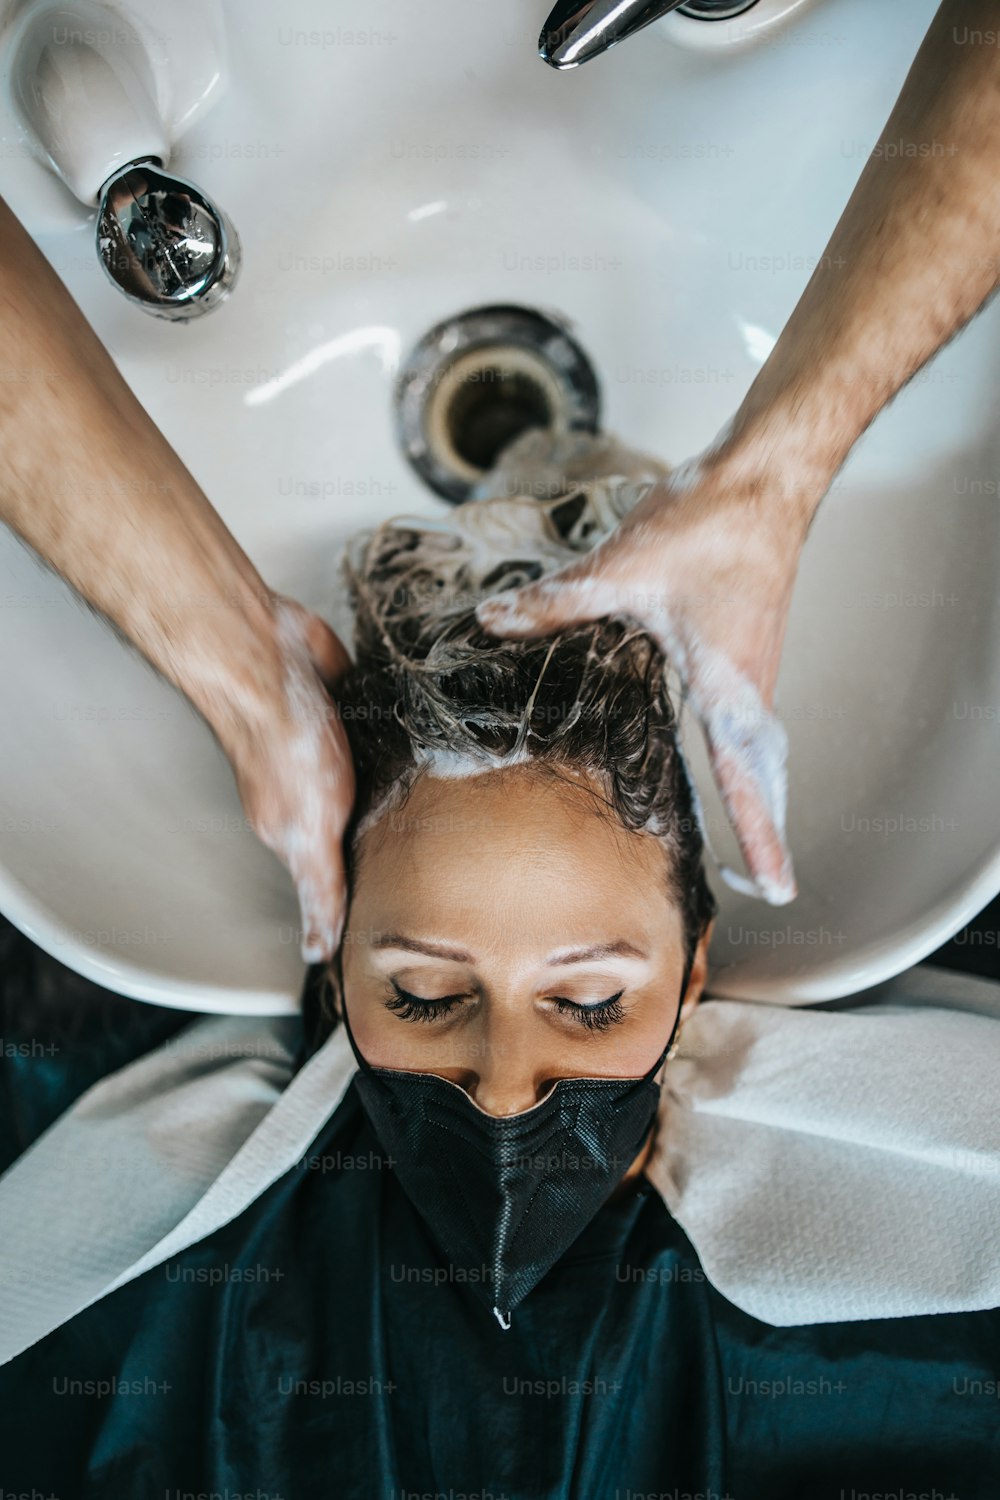 Cabeleireiro lavando o cabelo de uma bela mulher adulta jovem no salão de cabeleireiro. Ela está usando máscara facial de proteção como proteção contra a pandemia de vírus.